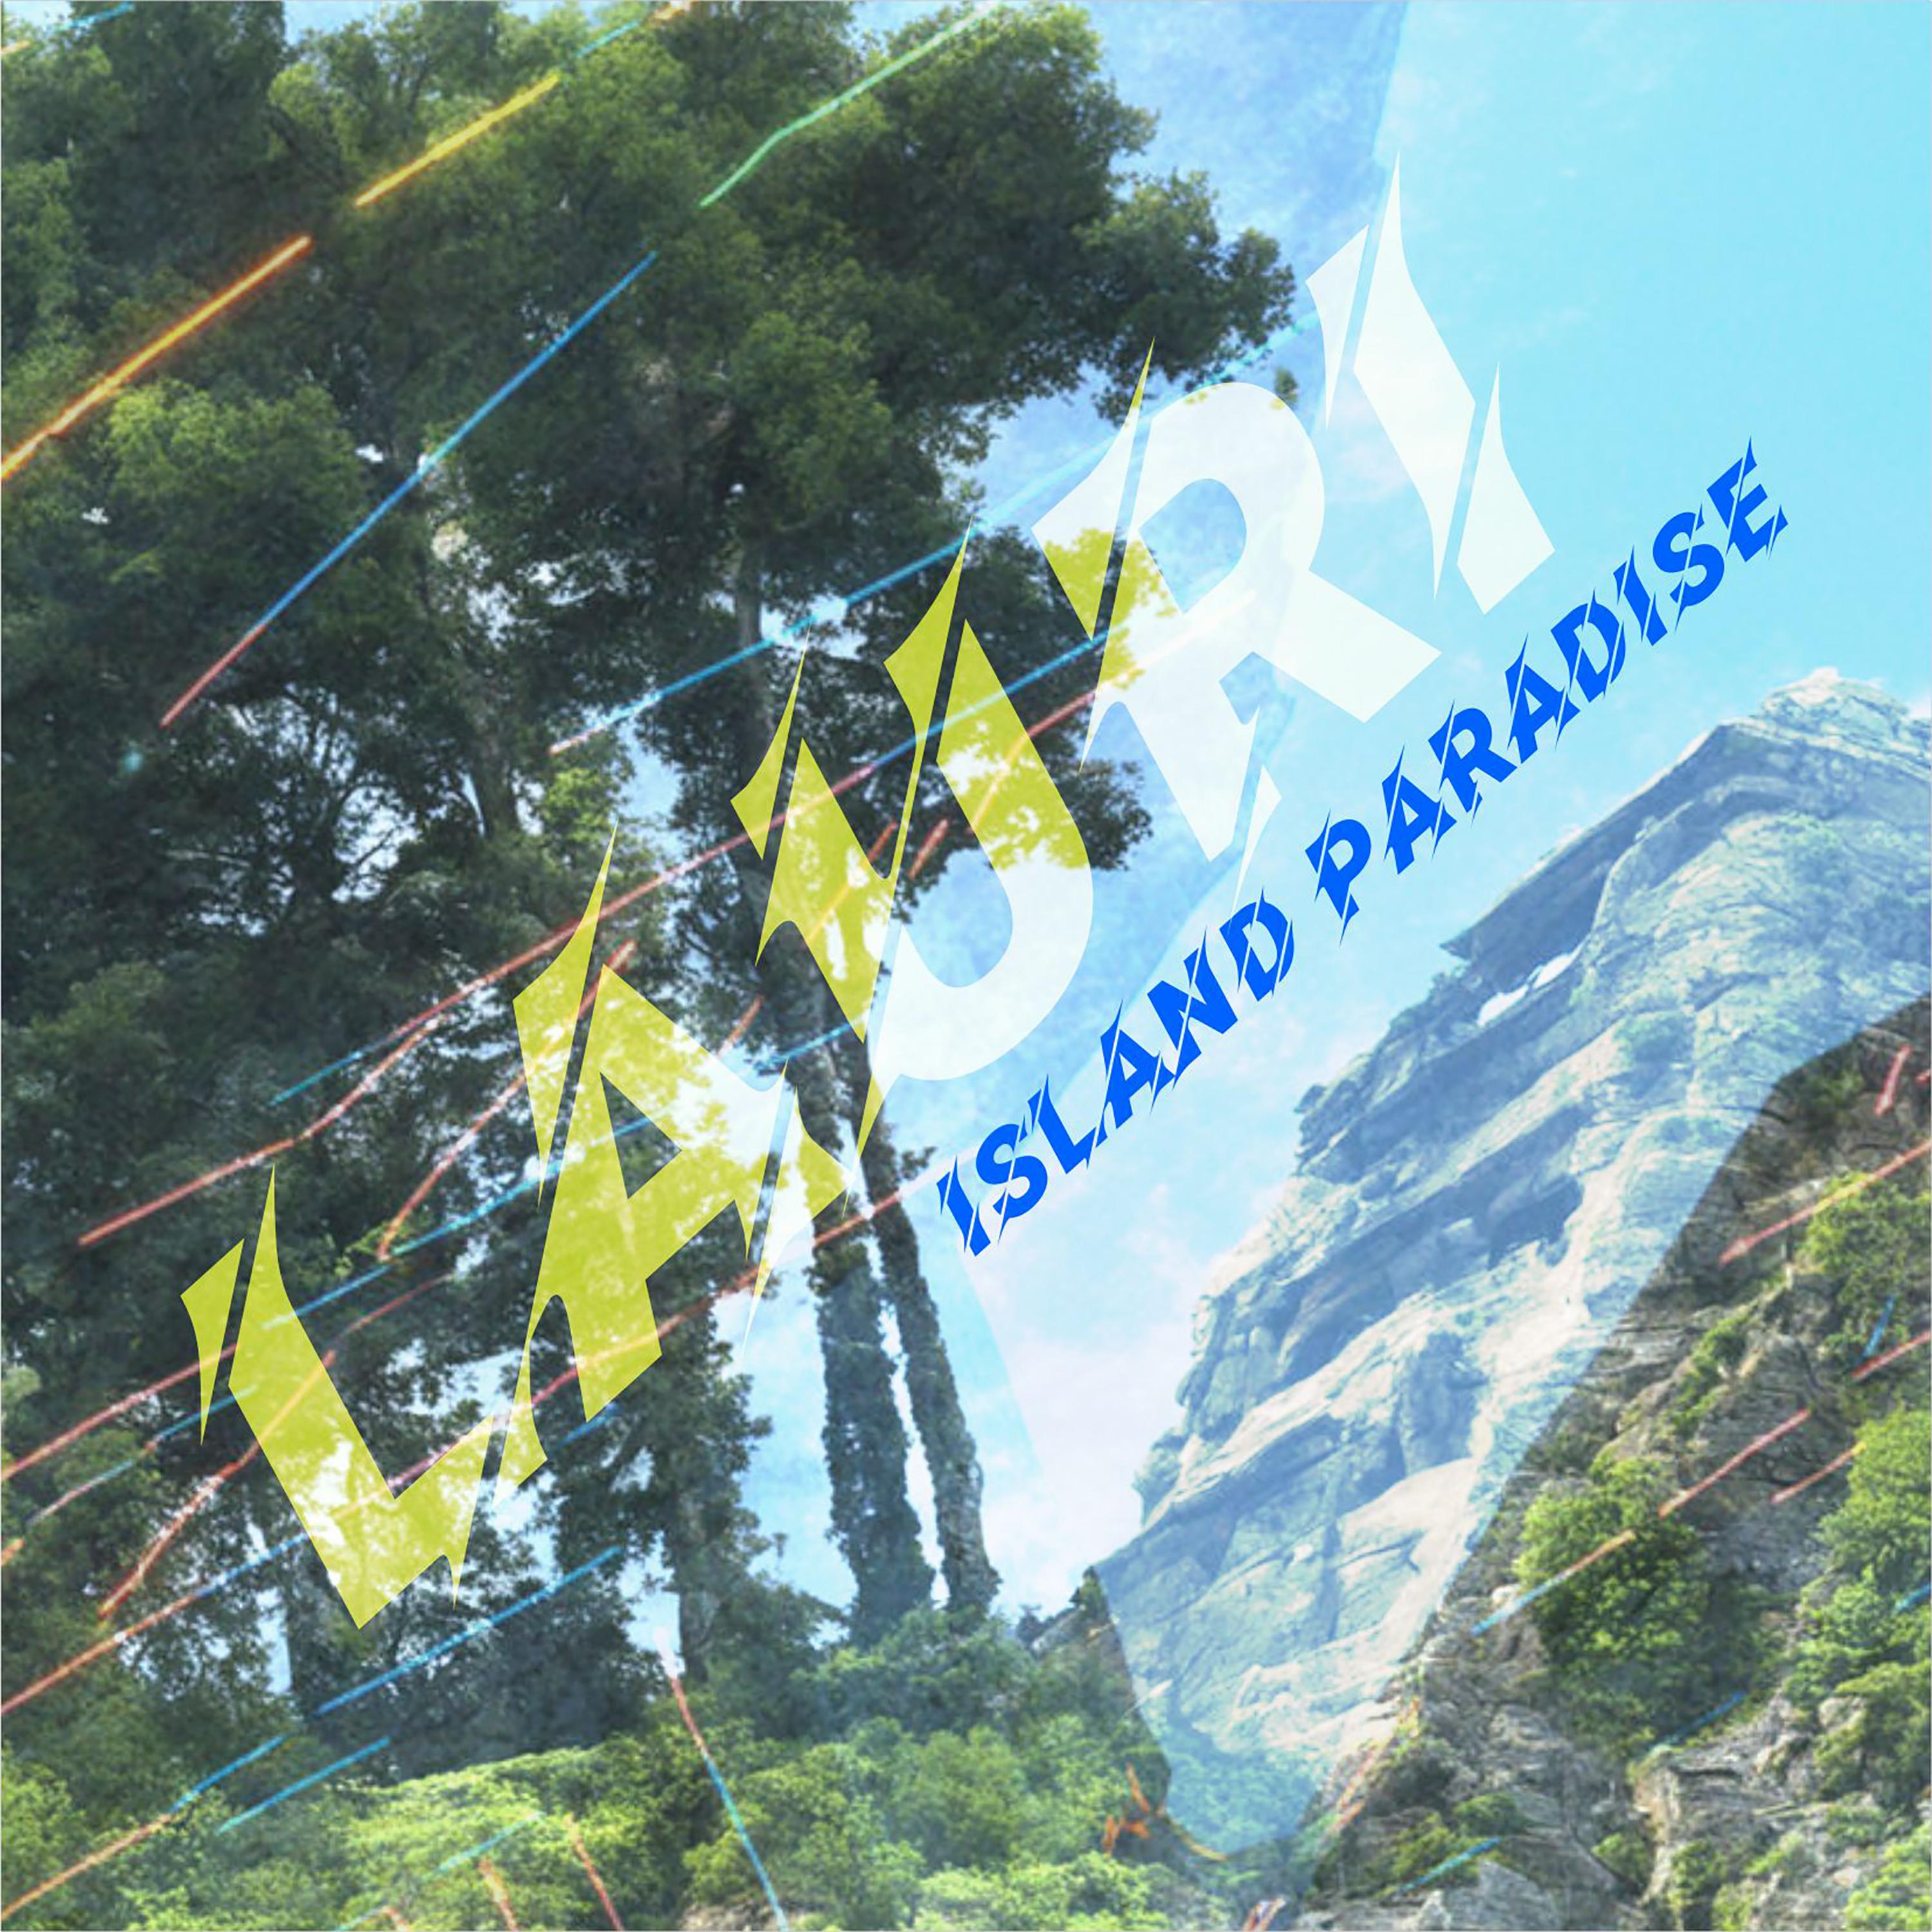 Постер альбома Island Paradise